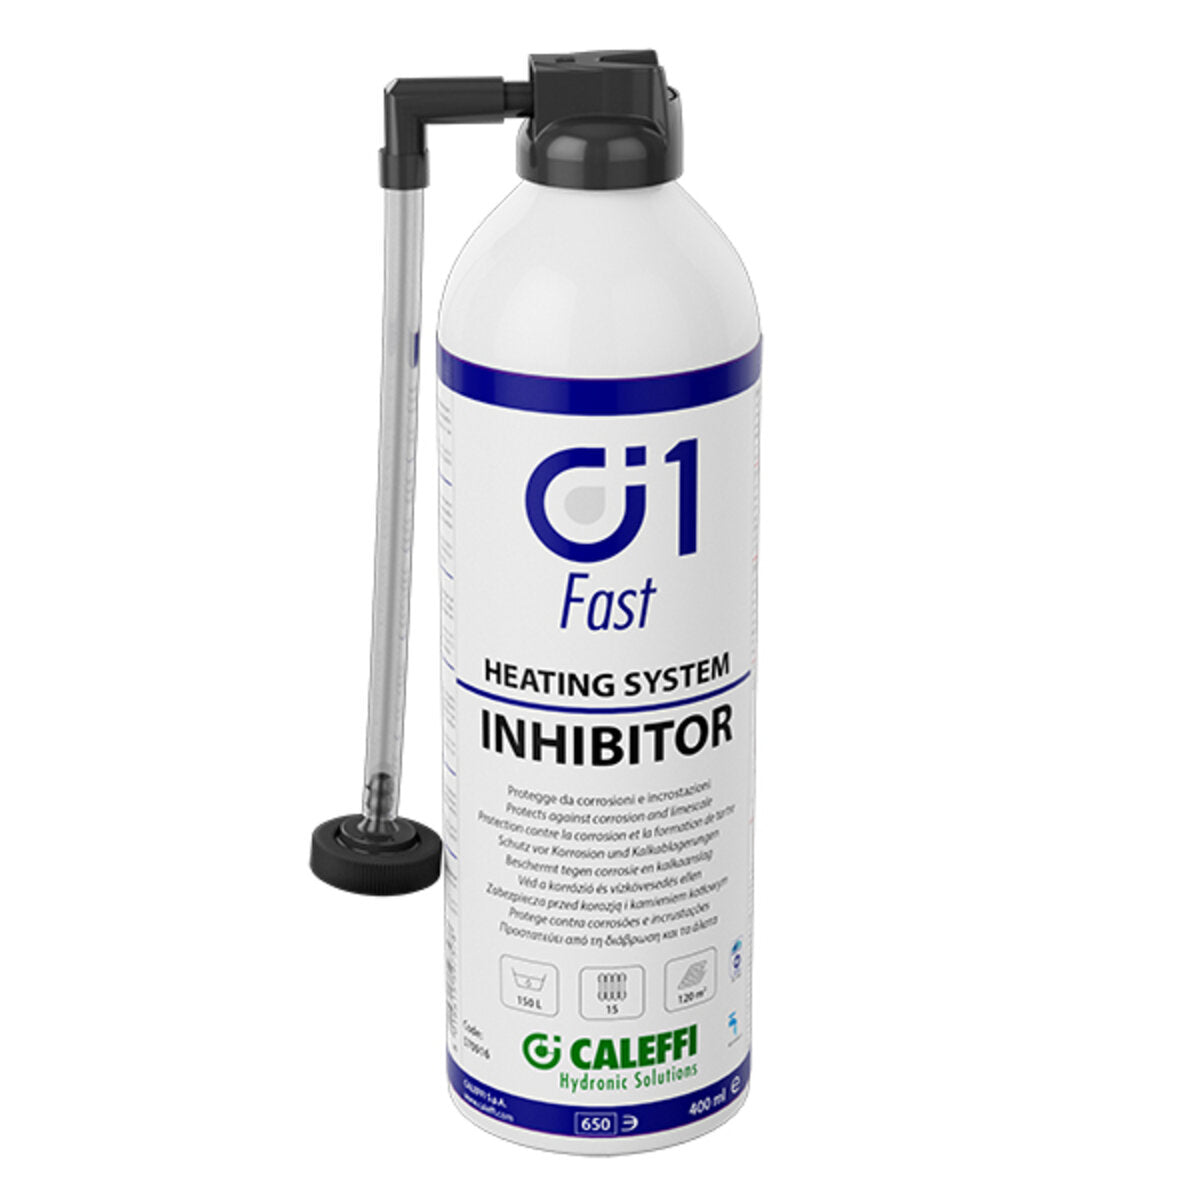 Caleffi c1 Fast Inhibitor Korrosionsschutz für Heiz- und Kühlsysteme